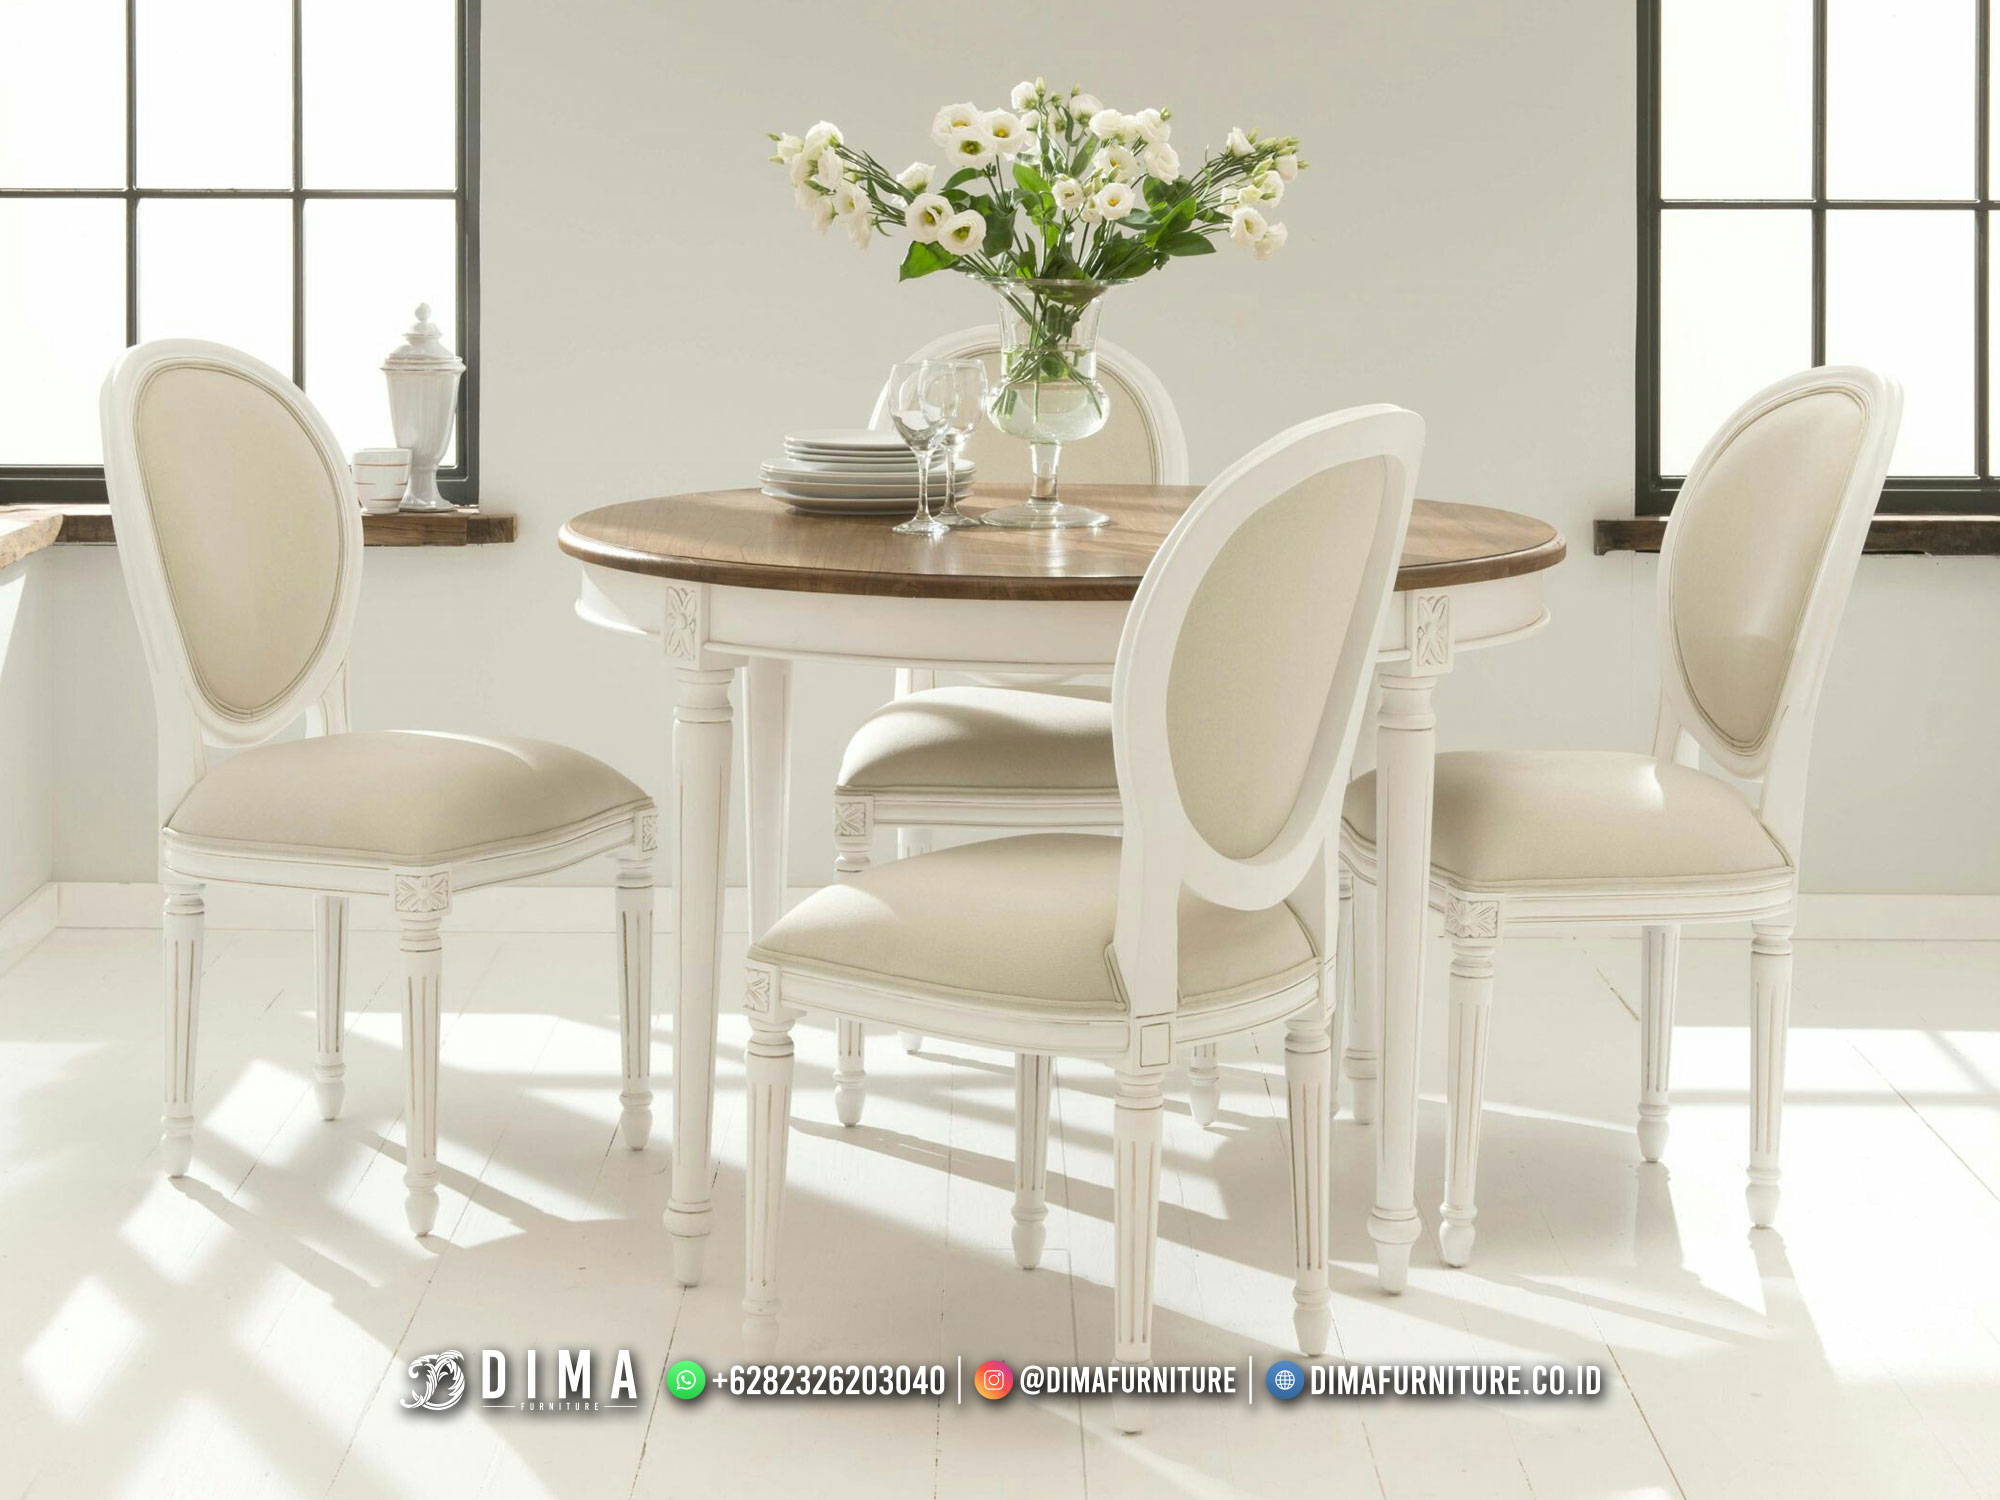 Harga Meja Makan Modern Minimalis Jepara Luxury Set Design Inspiring DF-2215